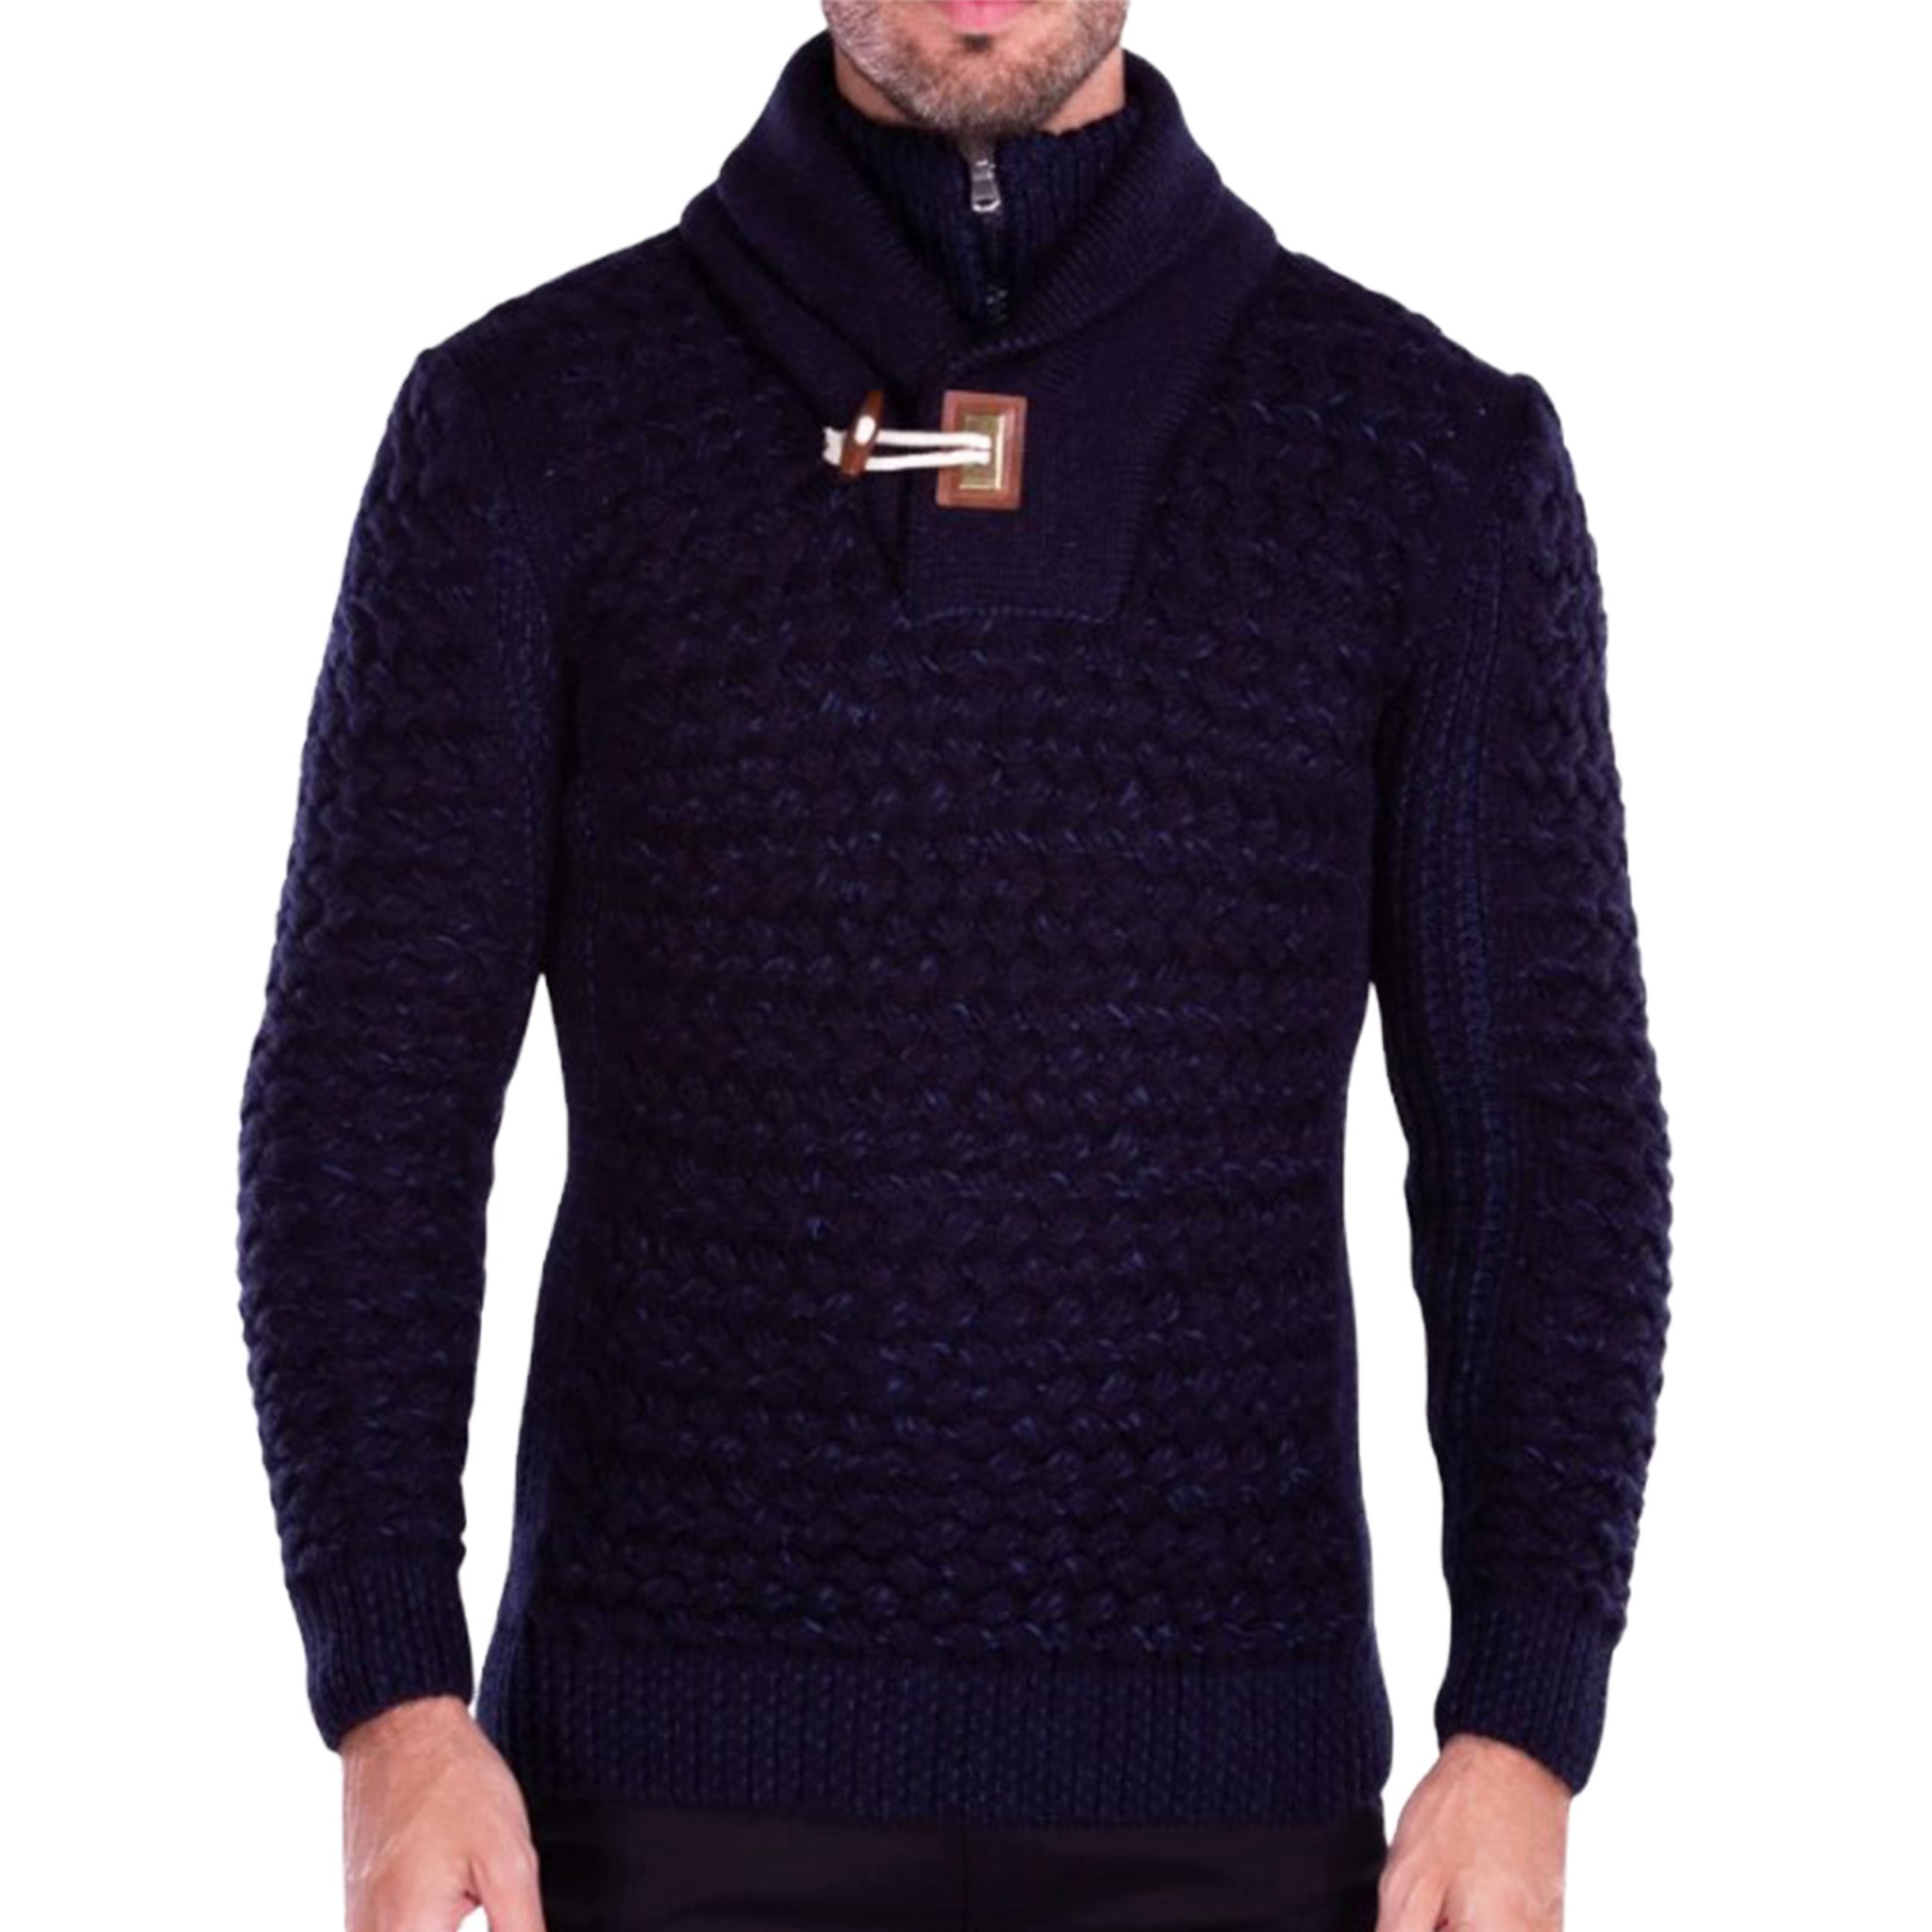 Navy Cowl Neck Men's Sweater